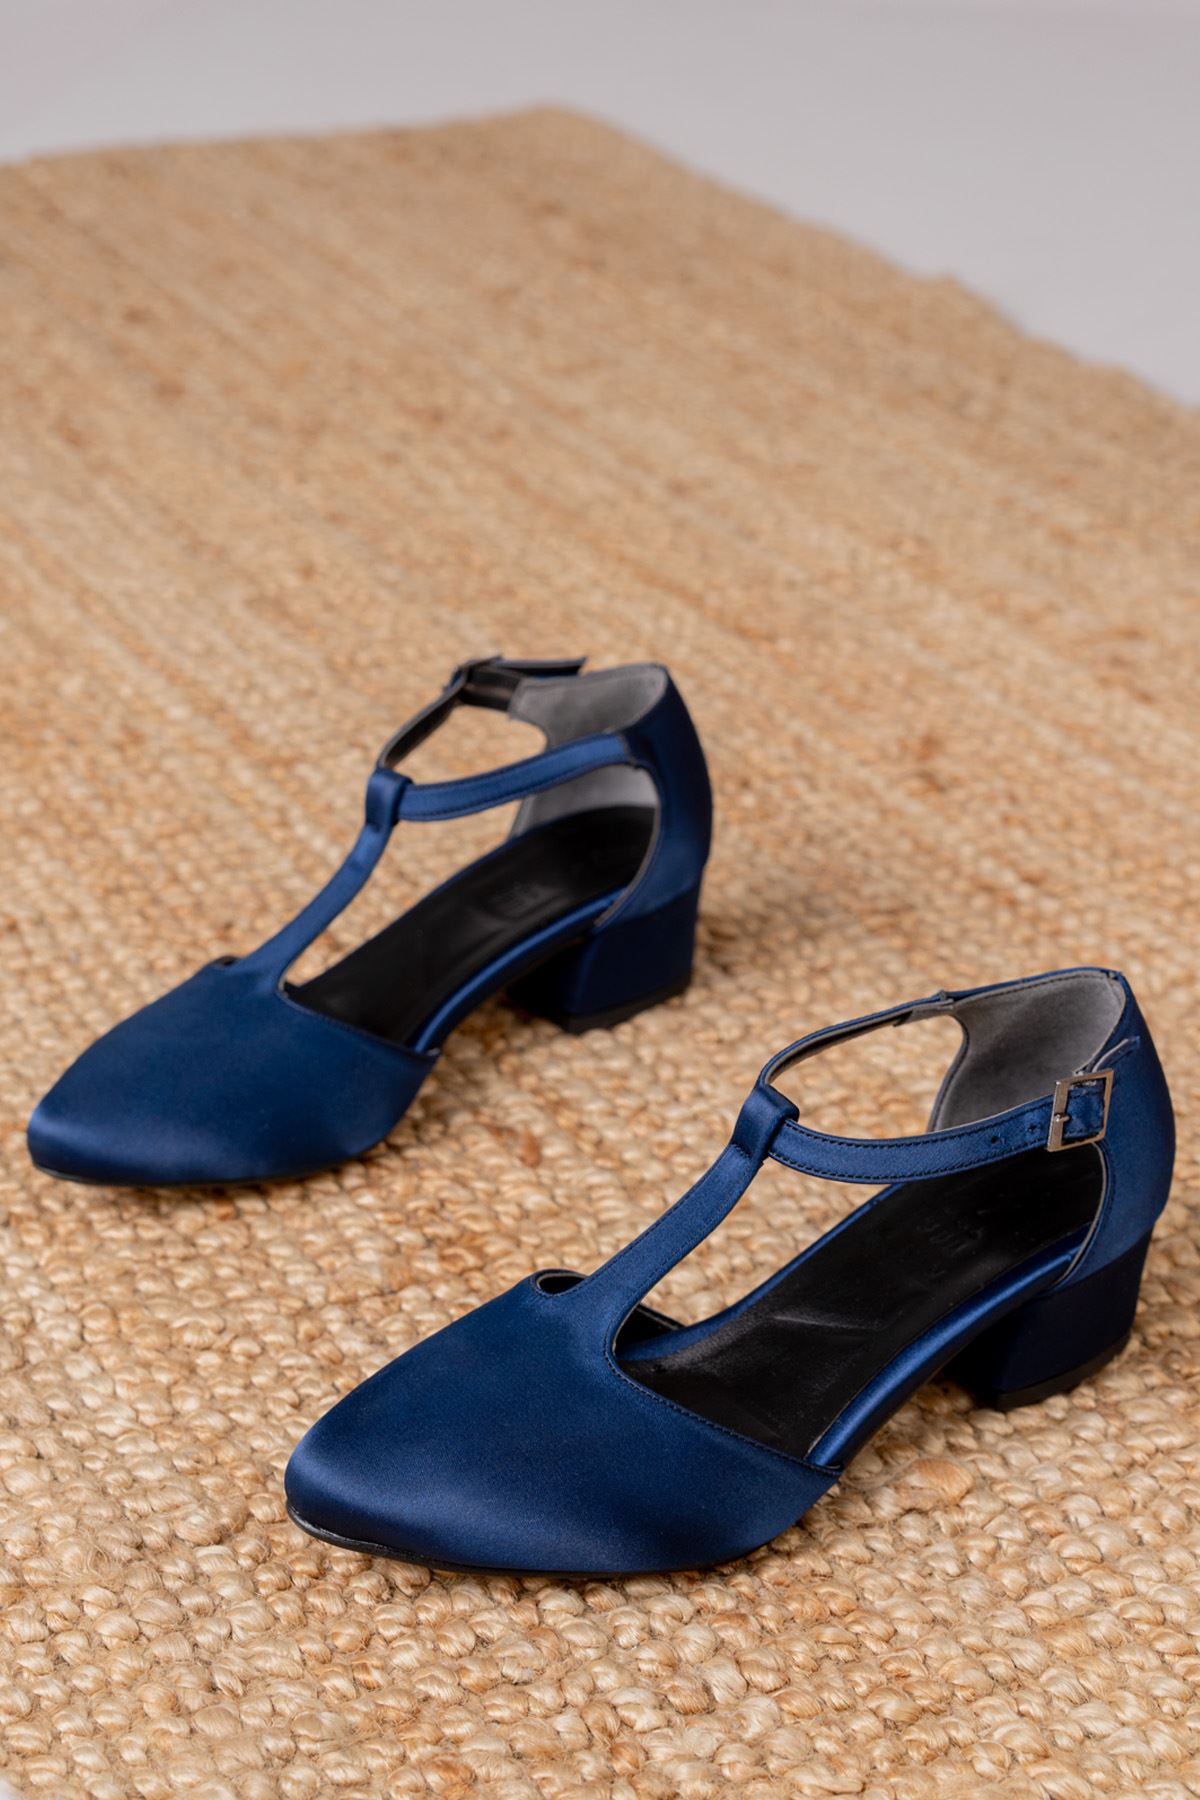 Jane Lacivert Saten Topuklu Kadın Ayakkabı  